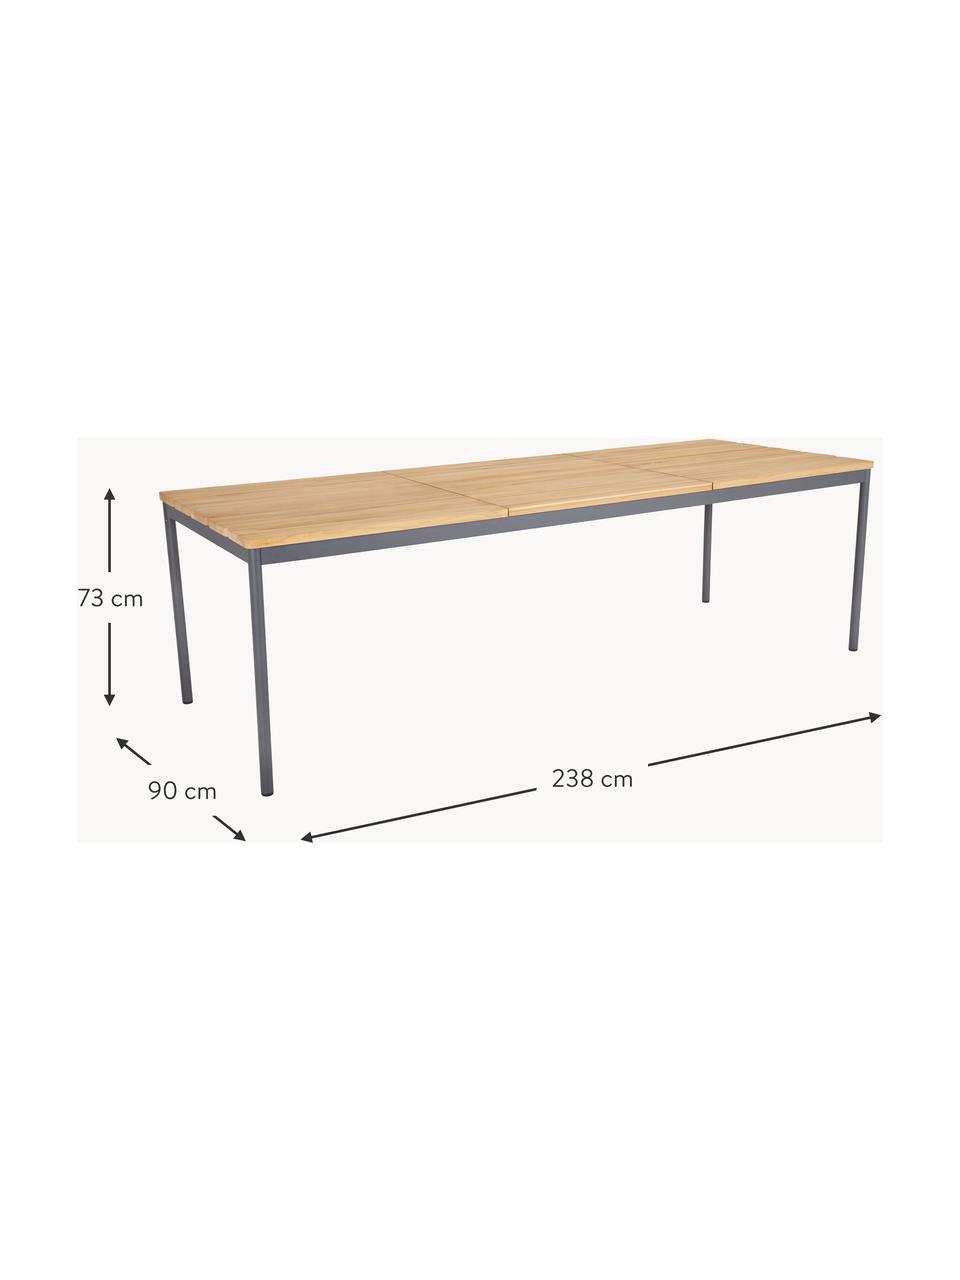 Gartentisch Nox, Tischplatte: Teakholz, geölt, Gestell: Aluminium, beschichtet, Anthrazit, B 238 x T 90 cm